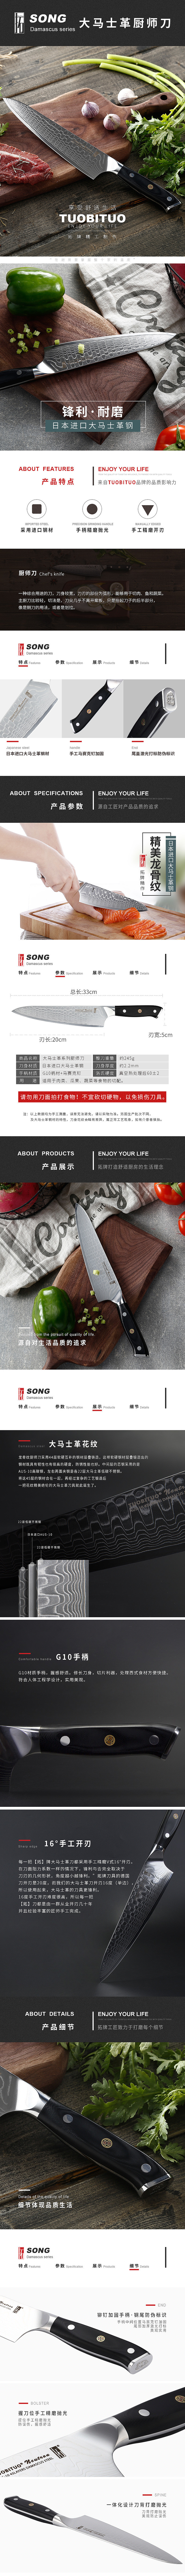 淘宝美工里艾日本进口大马士革钢厨师刀作品